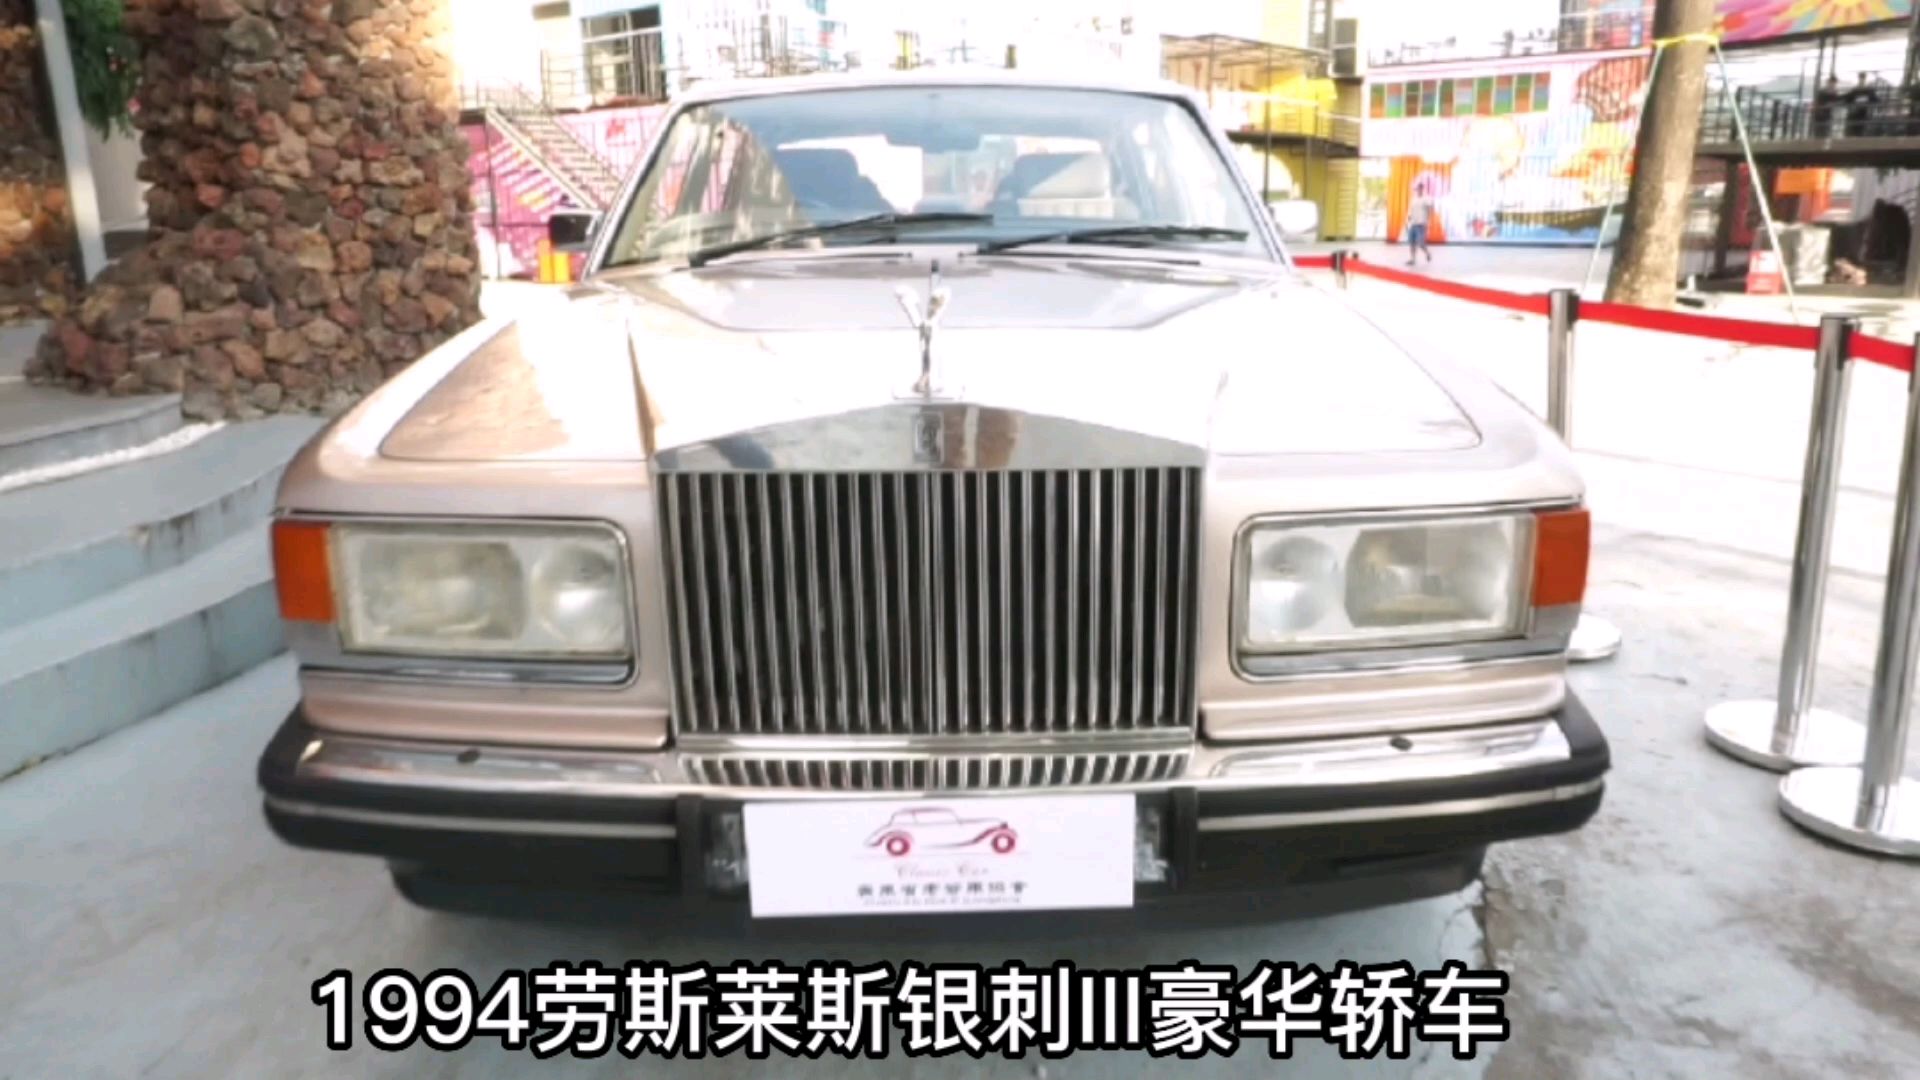 1994劳斯莱斯银刺III豪华轿车，老酒老车嘉年华活动现场剪影